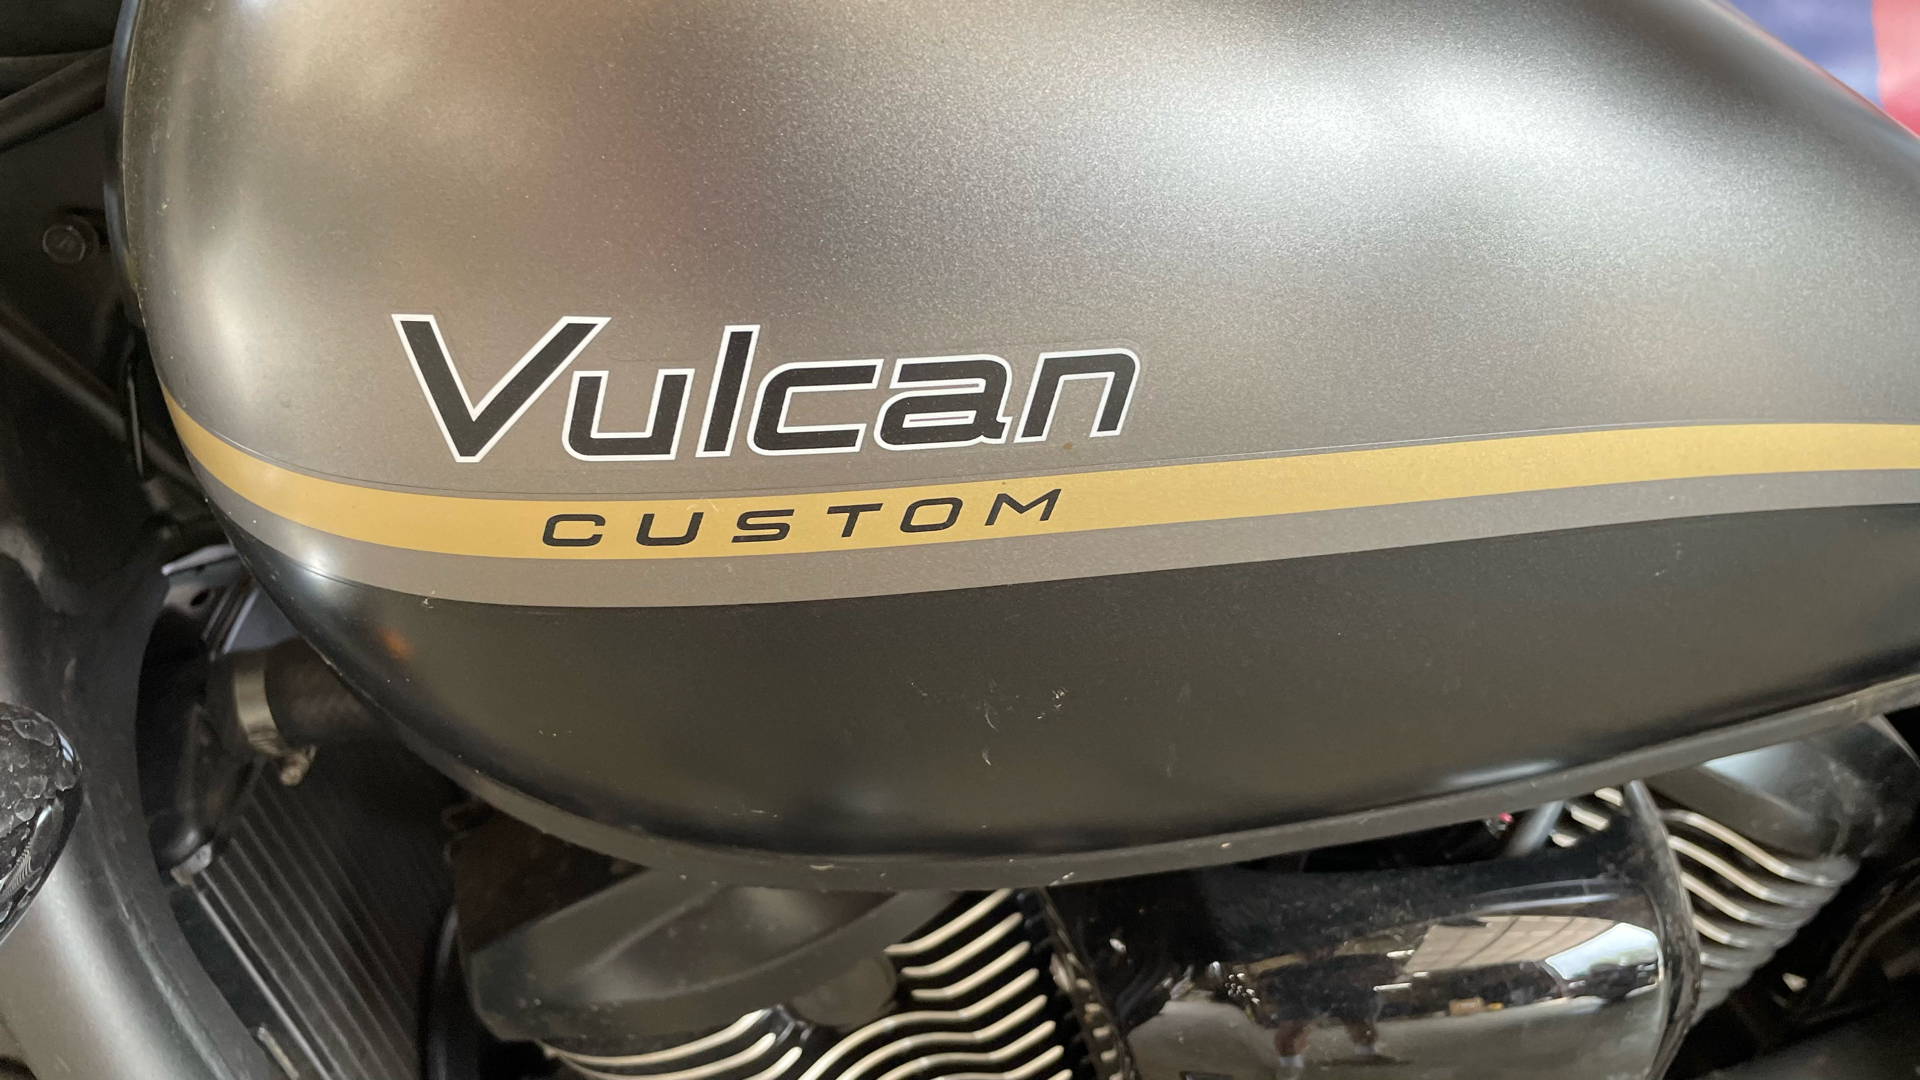 2020 Kawasaki Vulcan 900 Custom in Amarillo, Texas - Photo 6